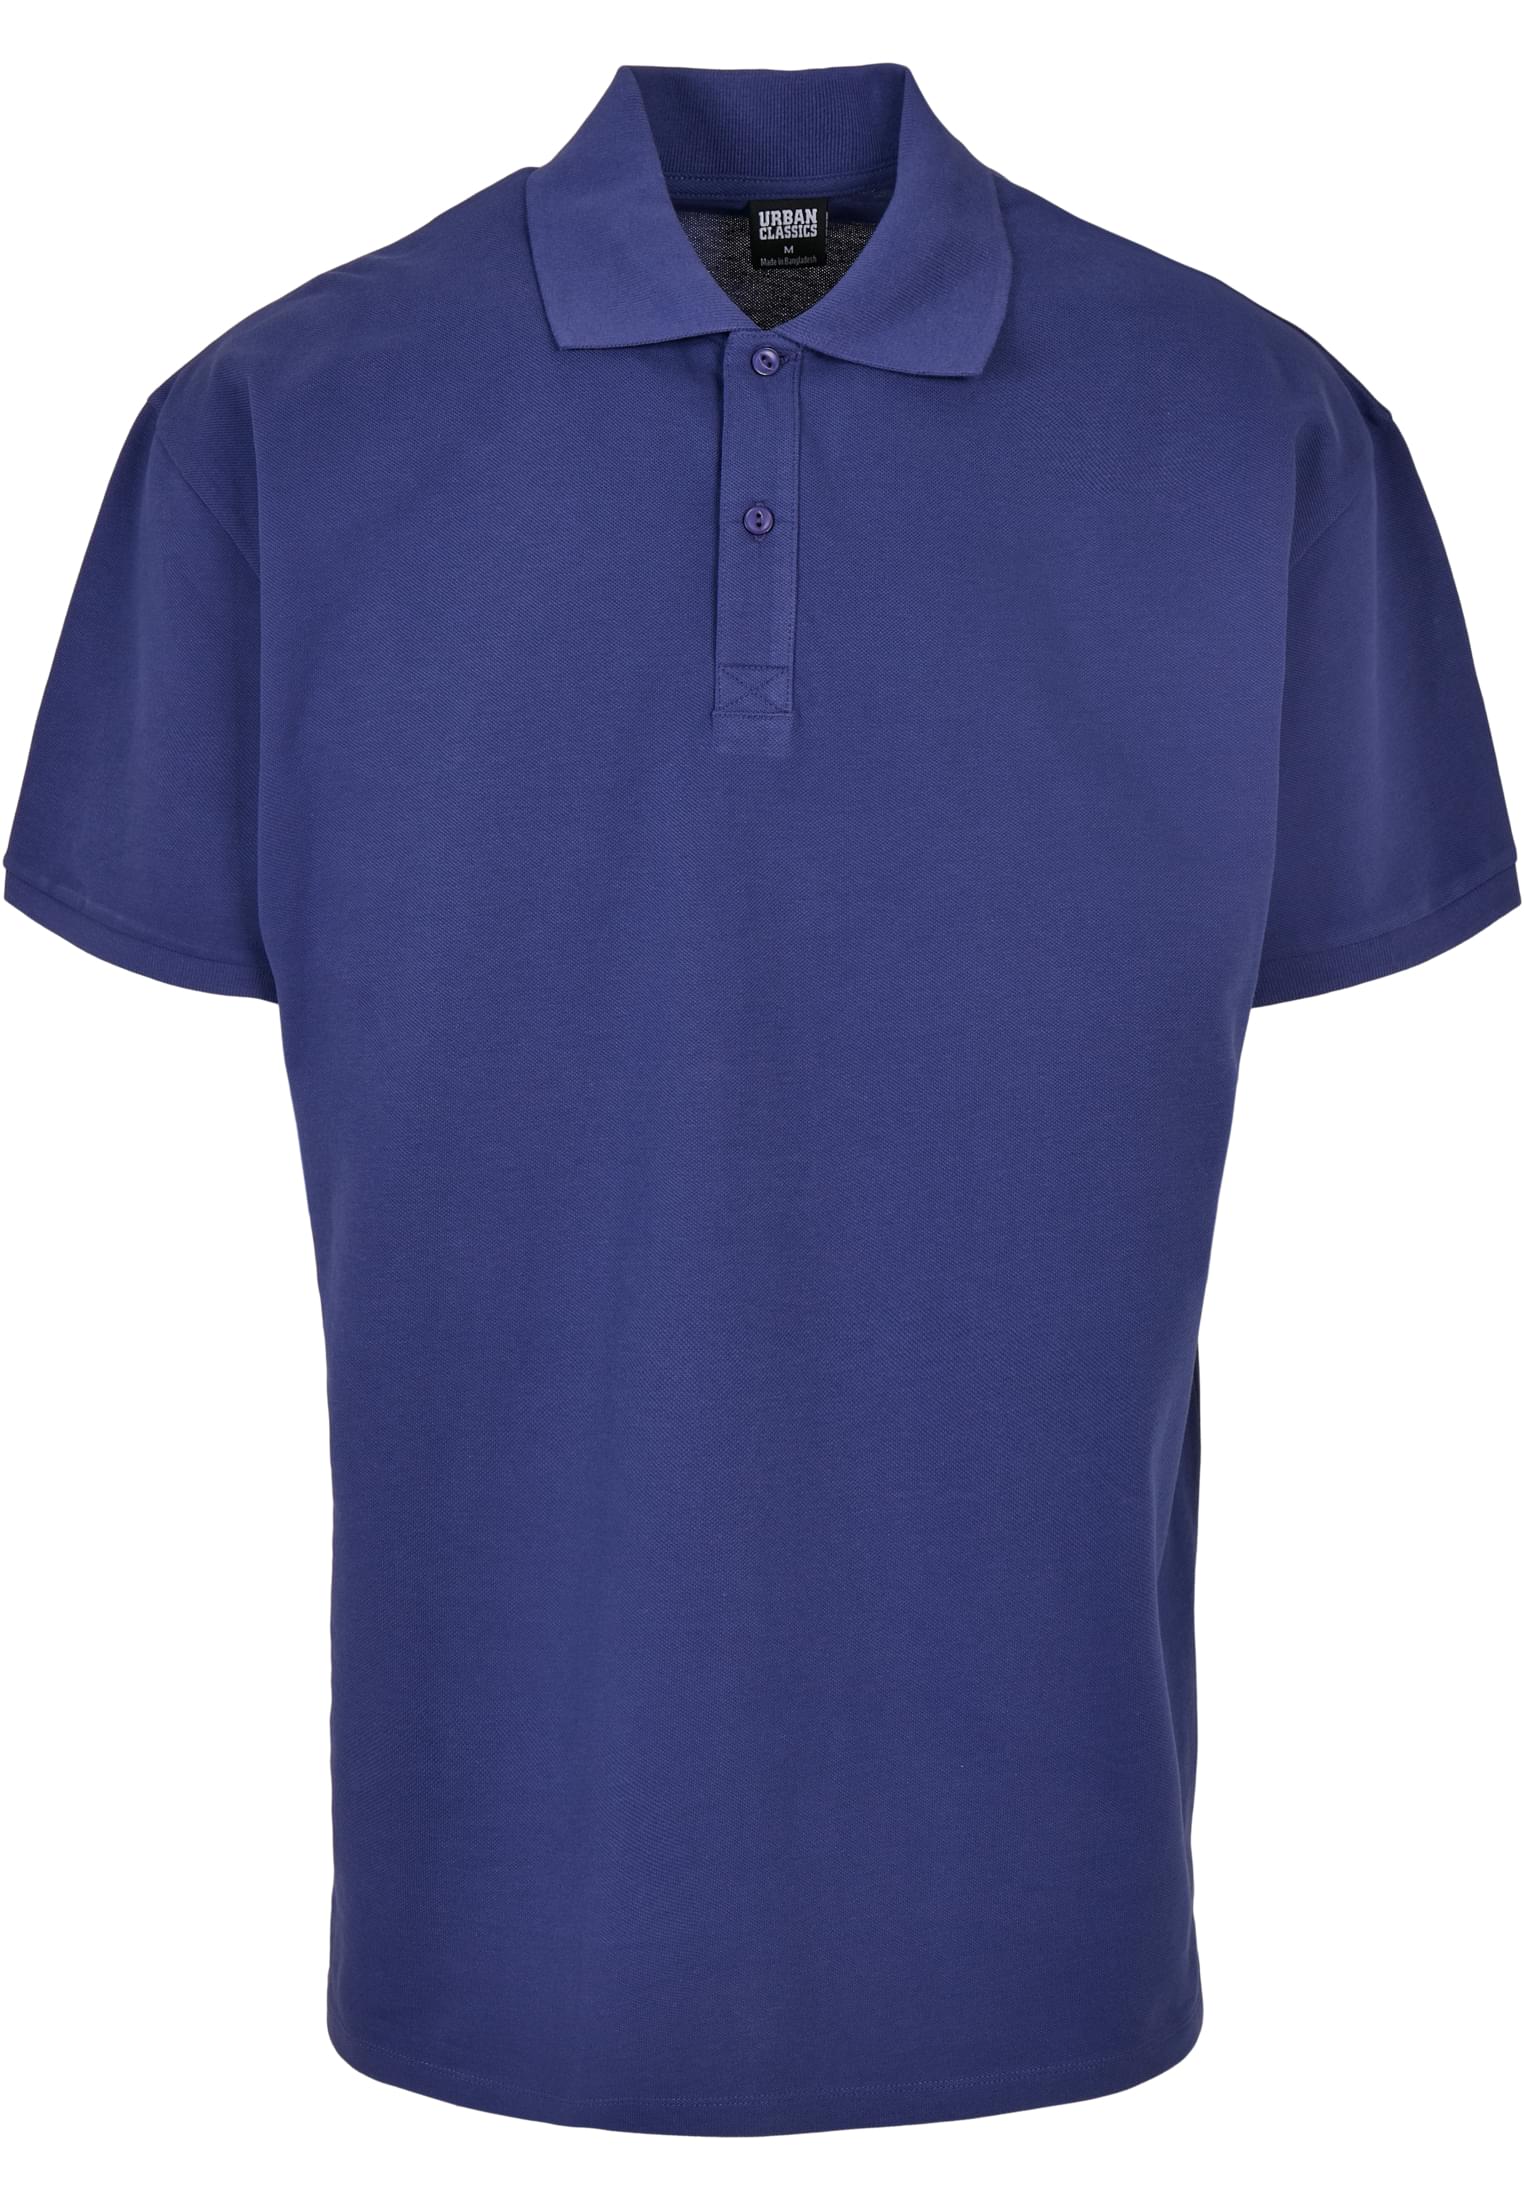 Hemden Oversized Polo in Farbe bluelight